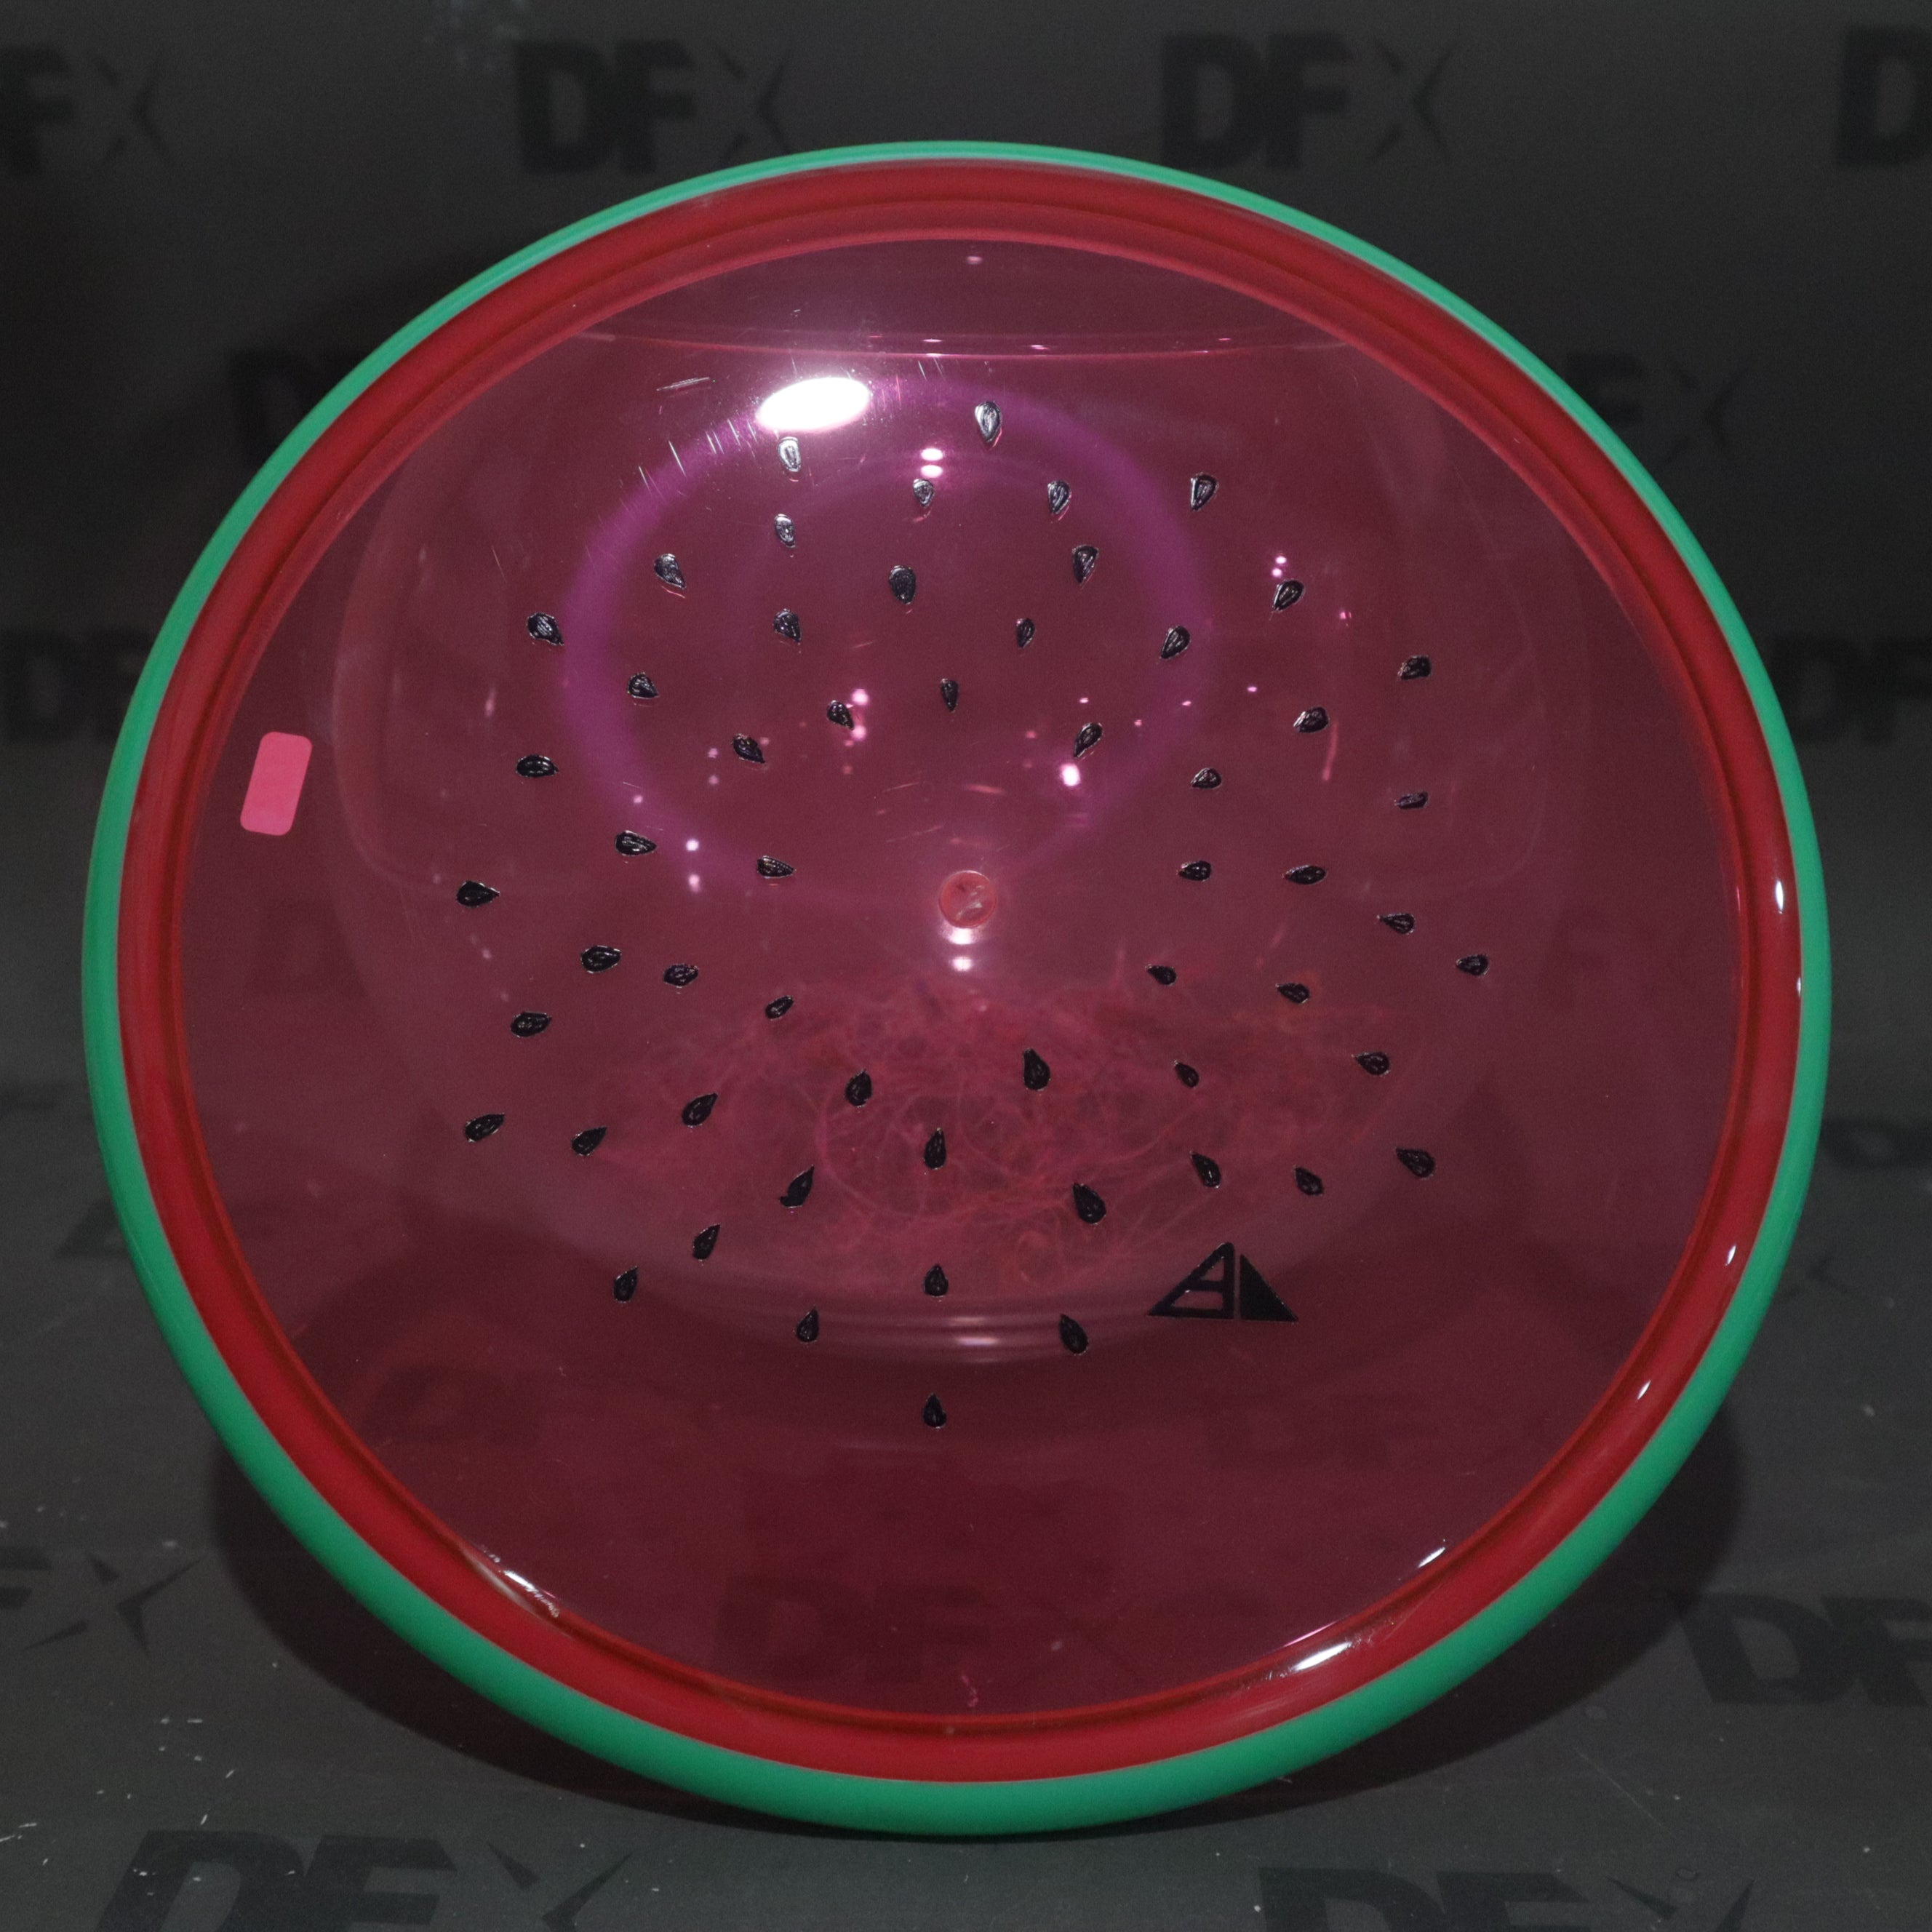 Axiom Proton Paradox - Watermelon Edition